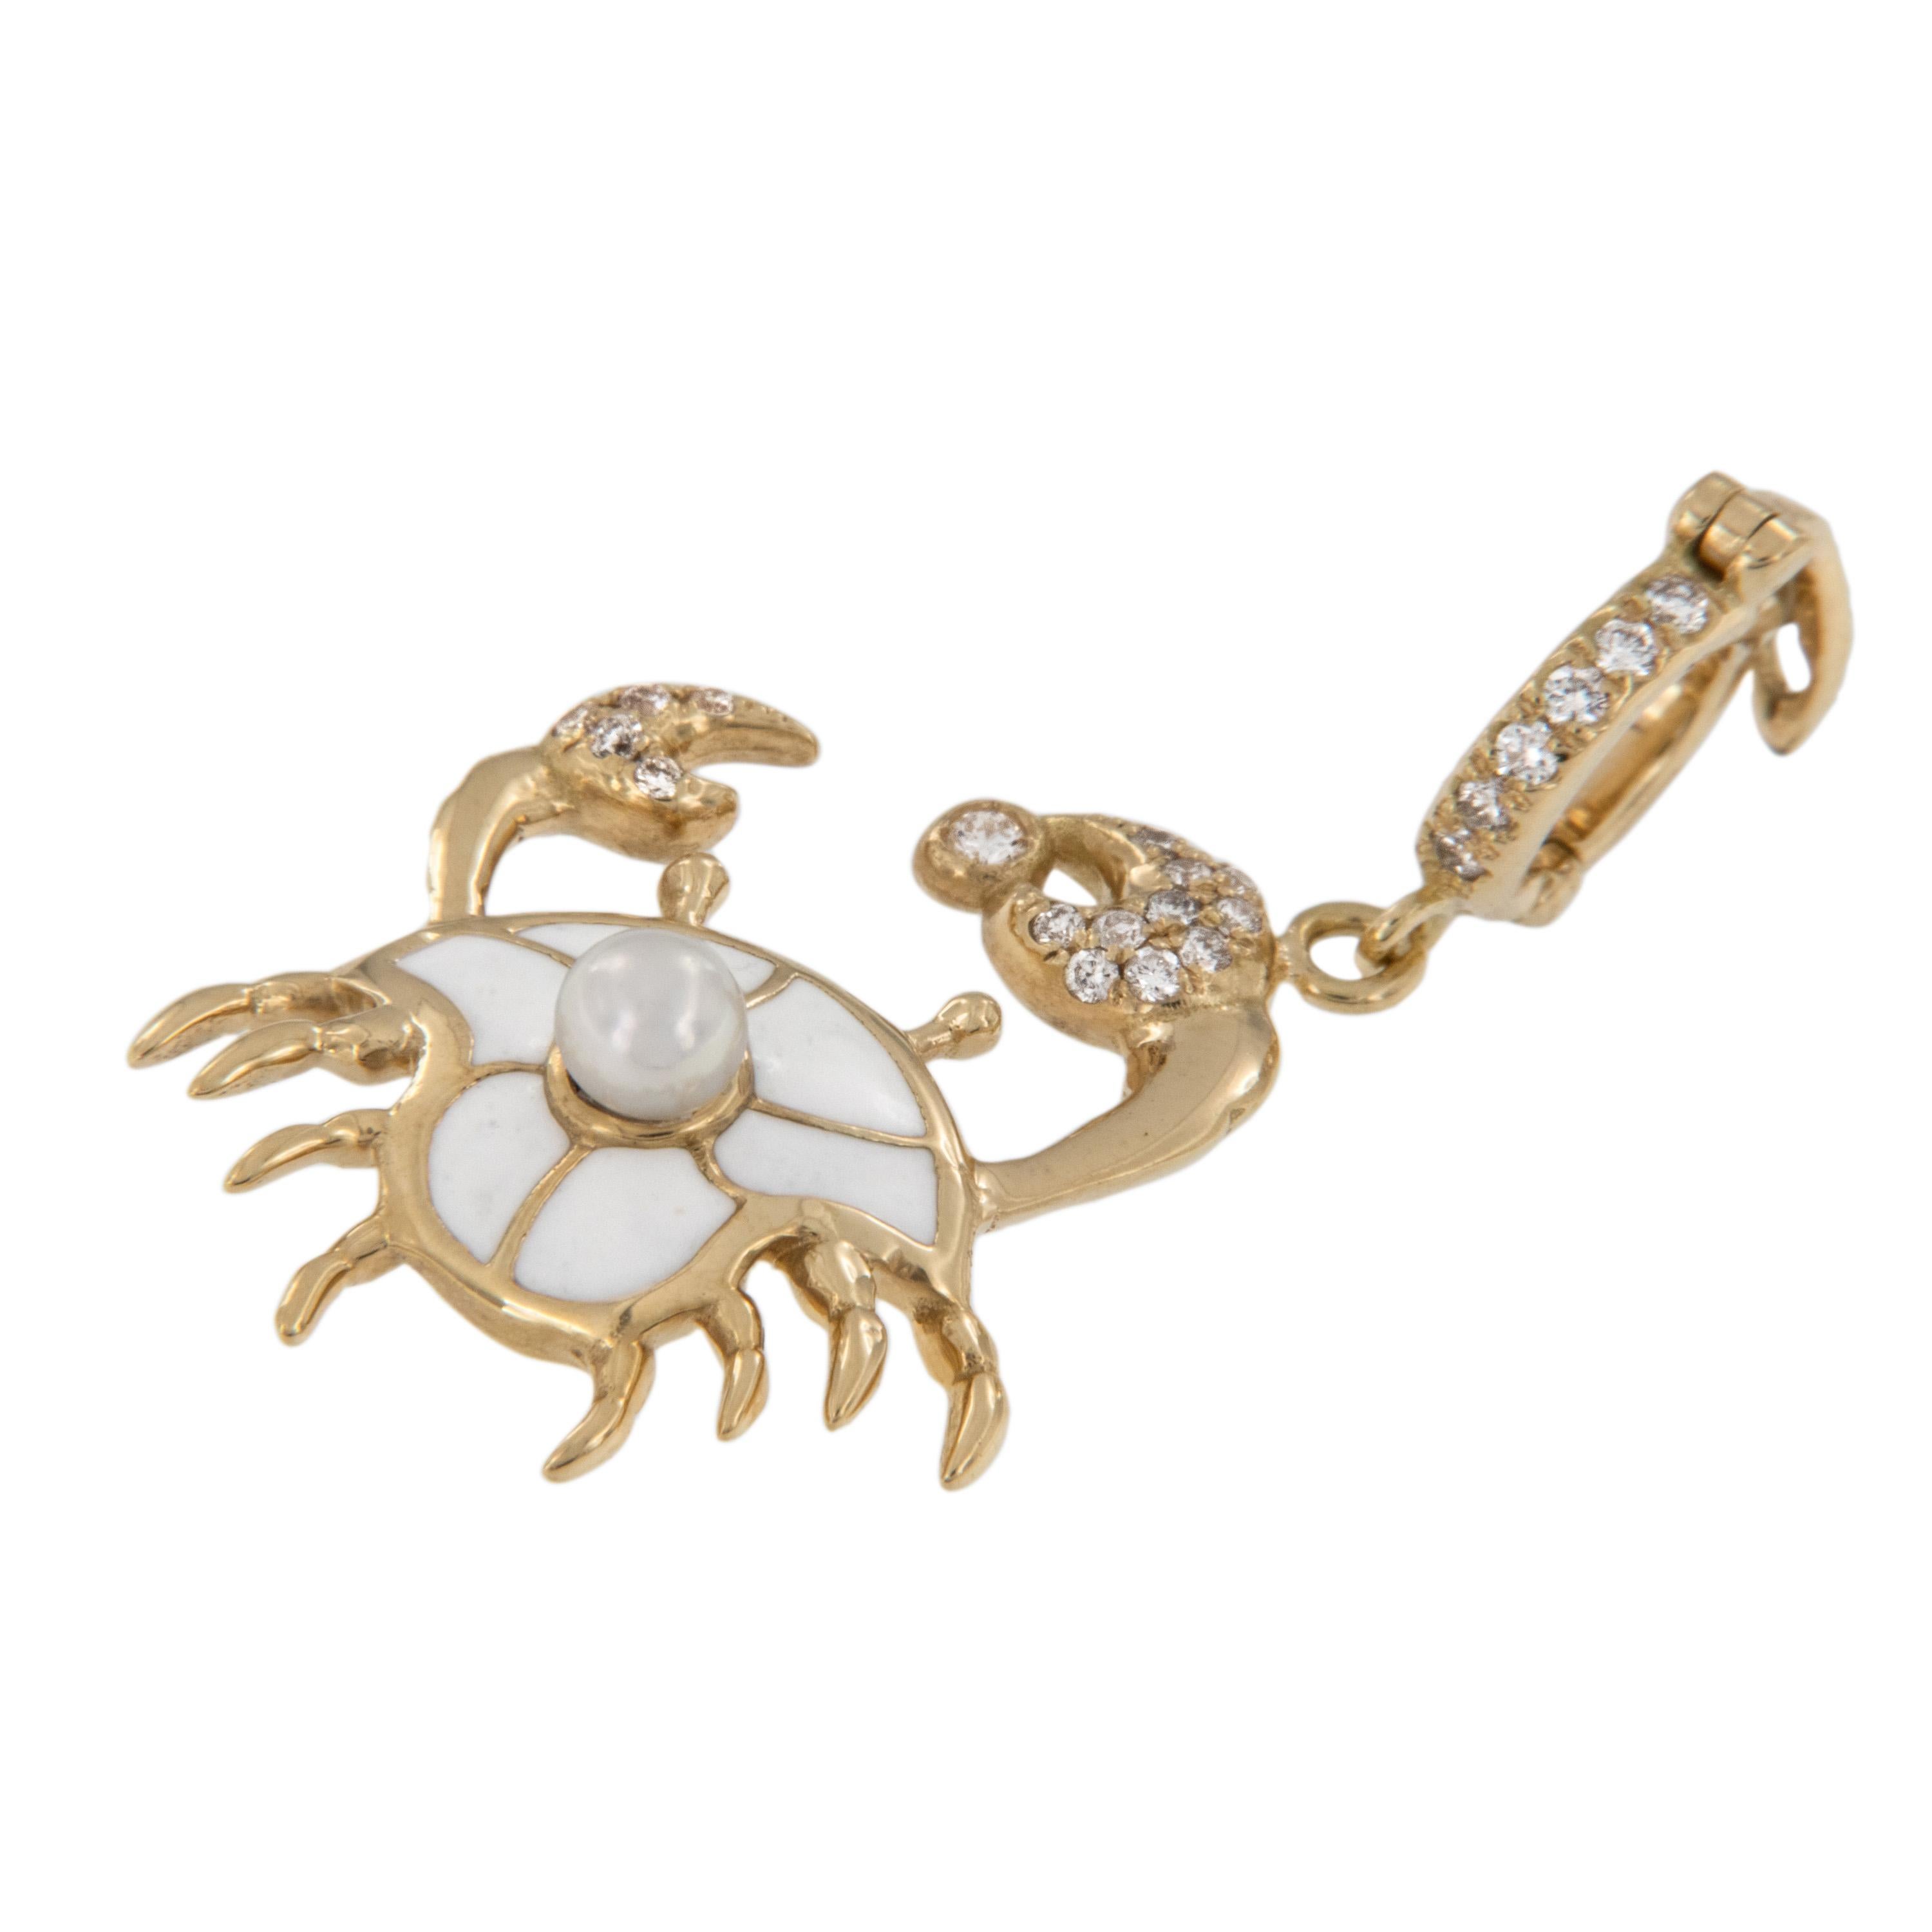 Diese bezaubernde Krabbe aus 18-karätigem Gelbgold ist mit weißer Emaille, einer Perlenrückseite und mit 0,12 Karat weißen Diamanten besetzten Krallen und einem Bügel versehen, der mit einem Scharnier versehen ist, so dass sie leicht mit Ihrer